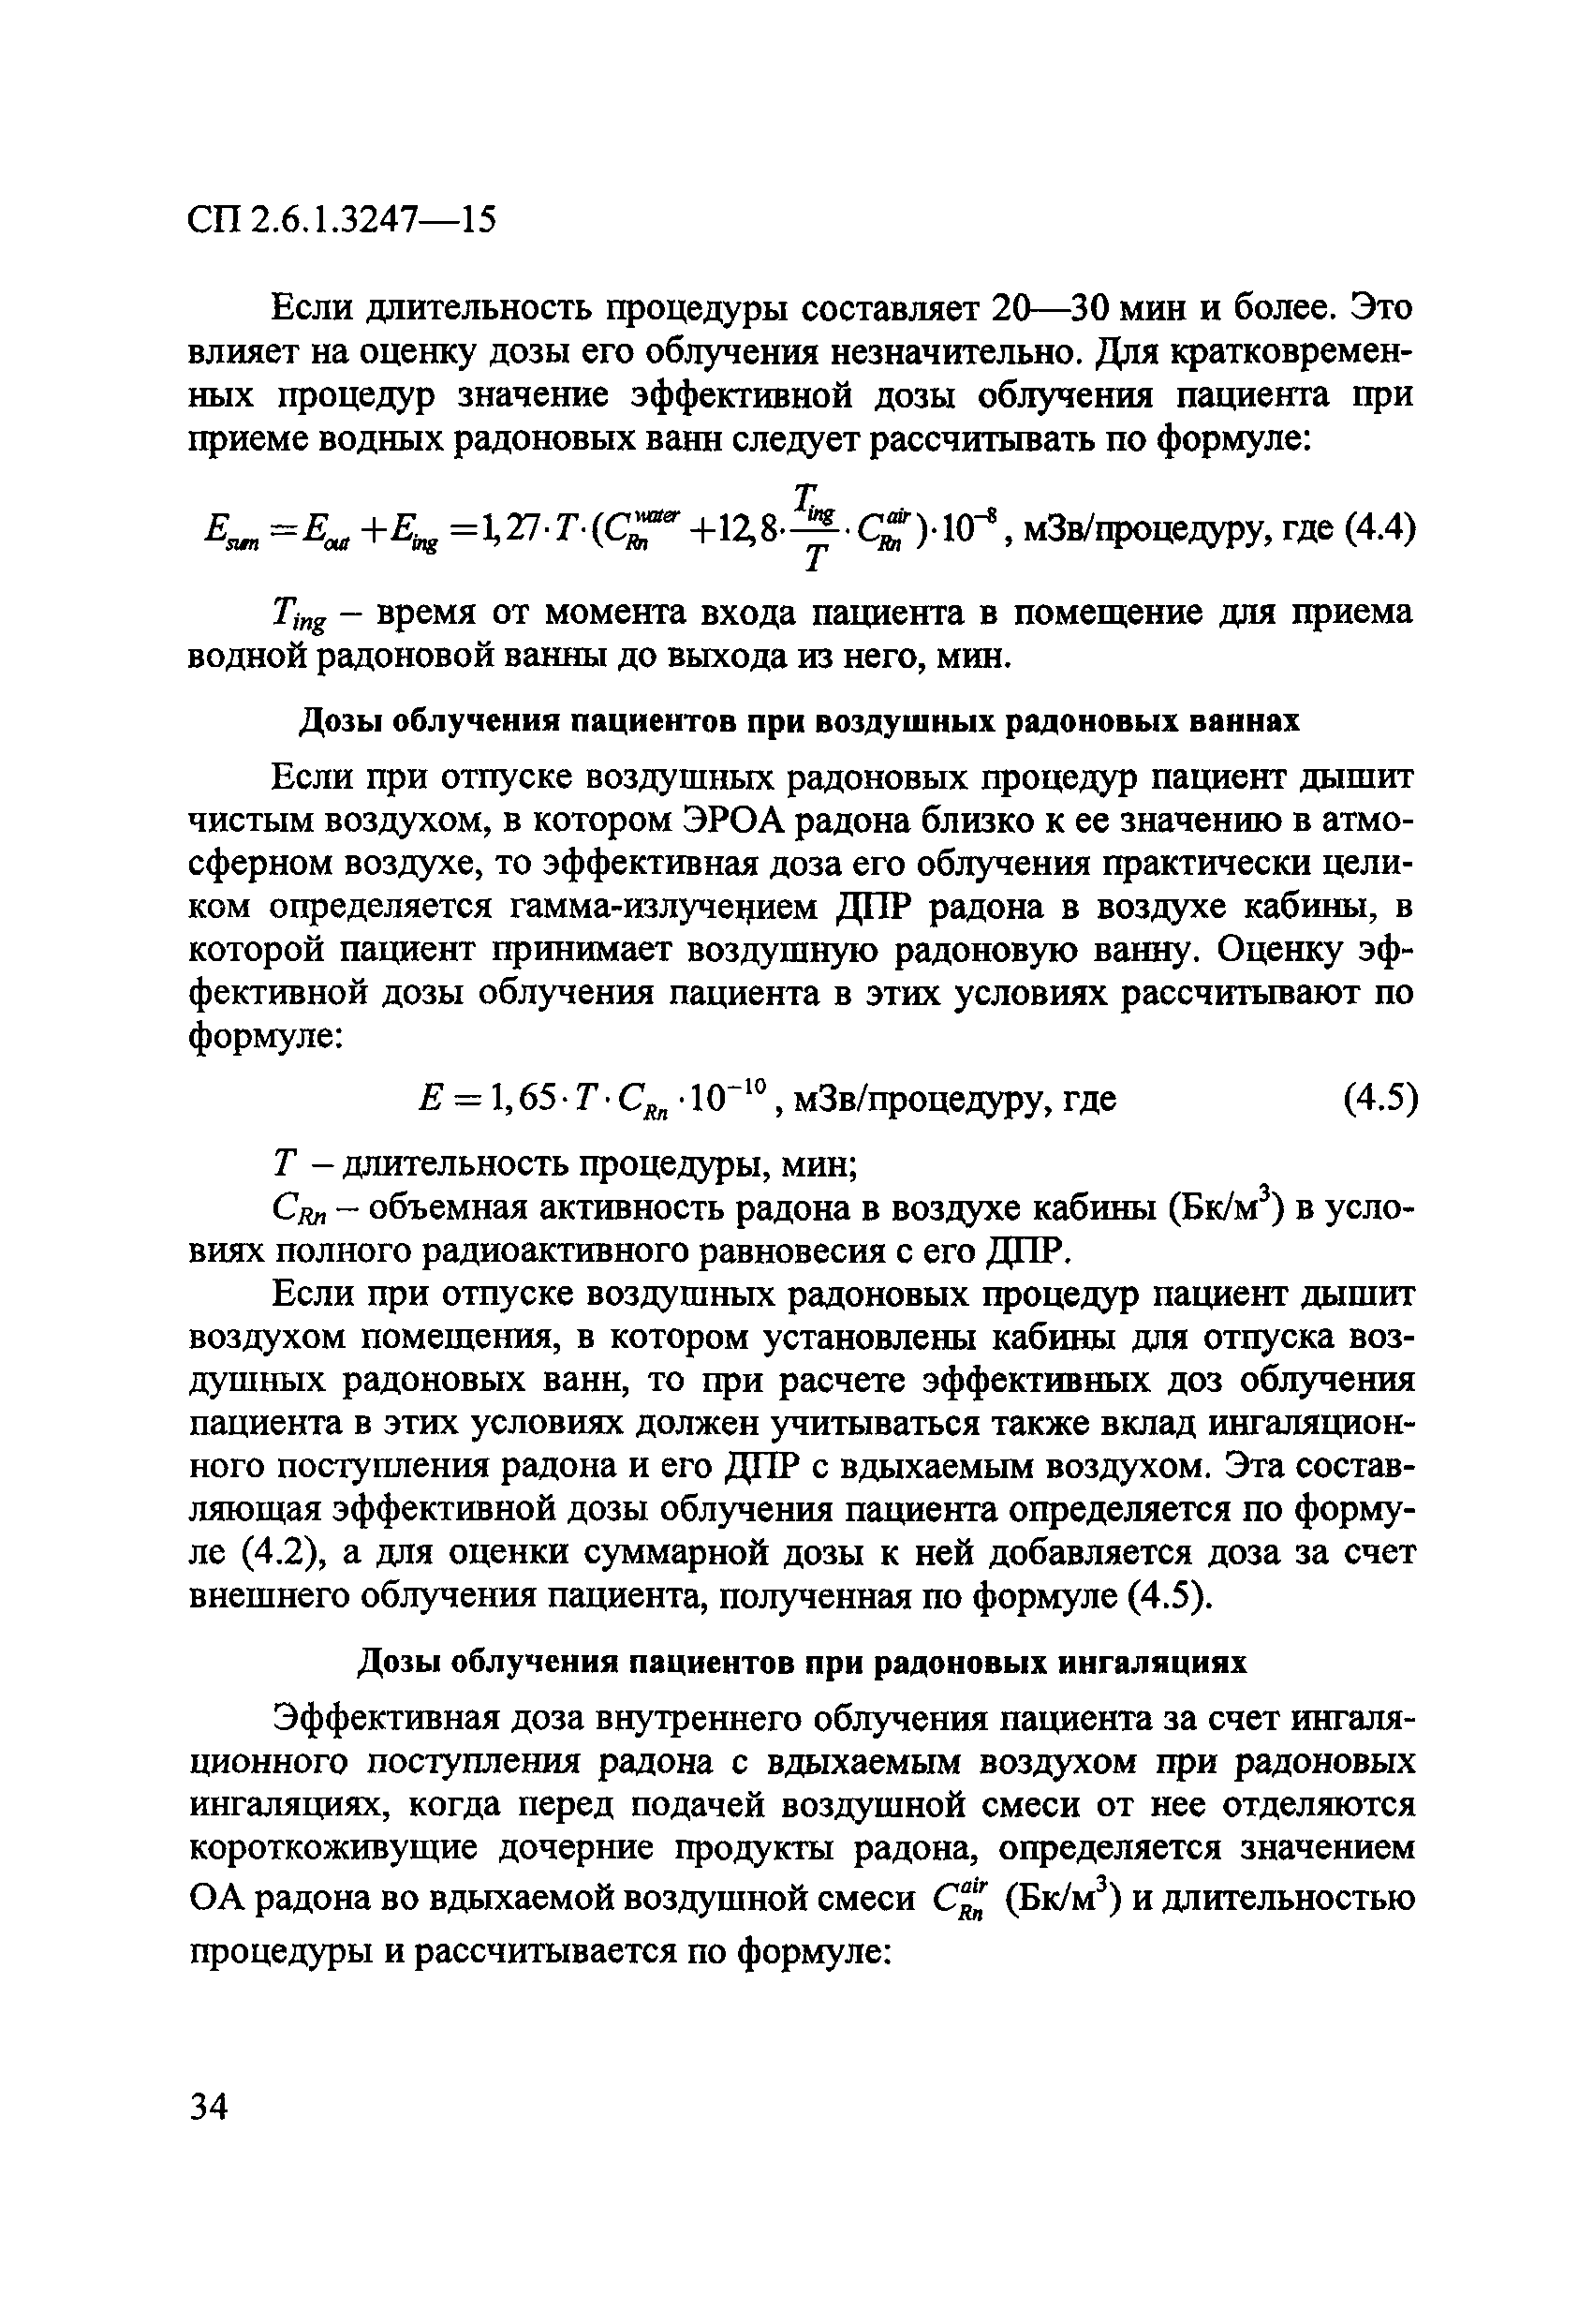 СП 2.6.1.3247-15